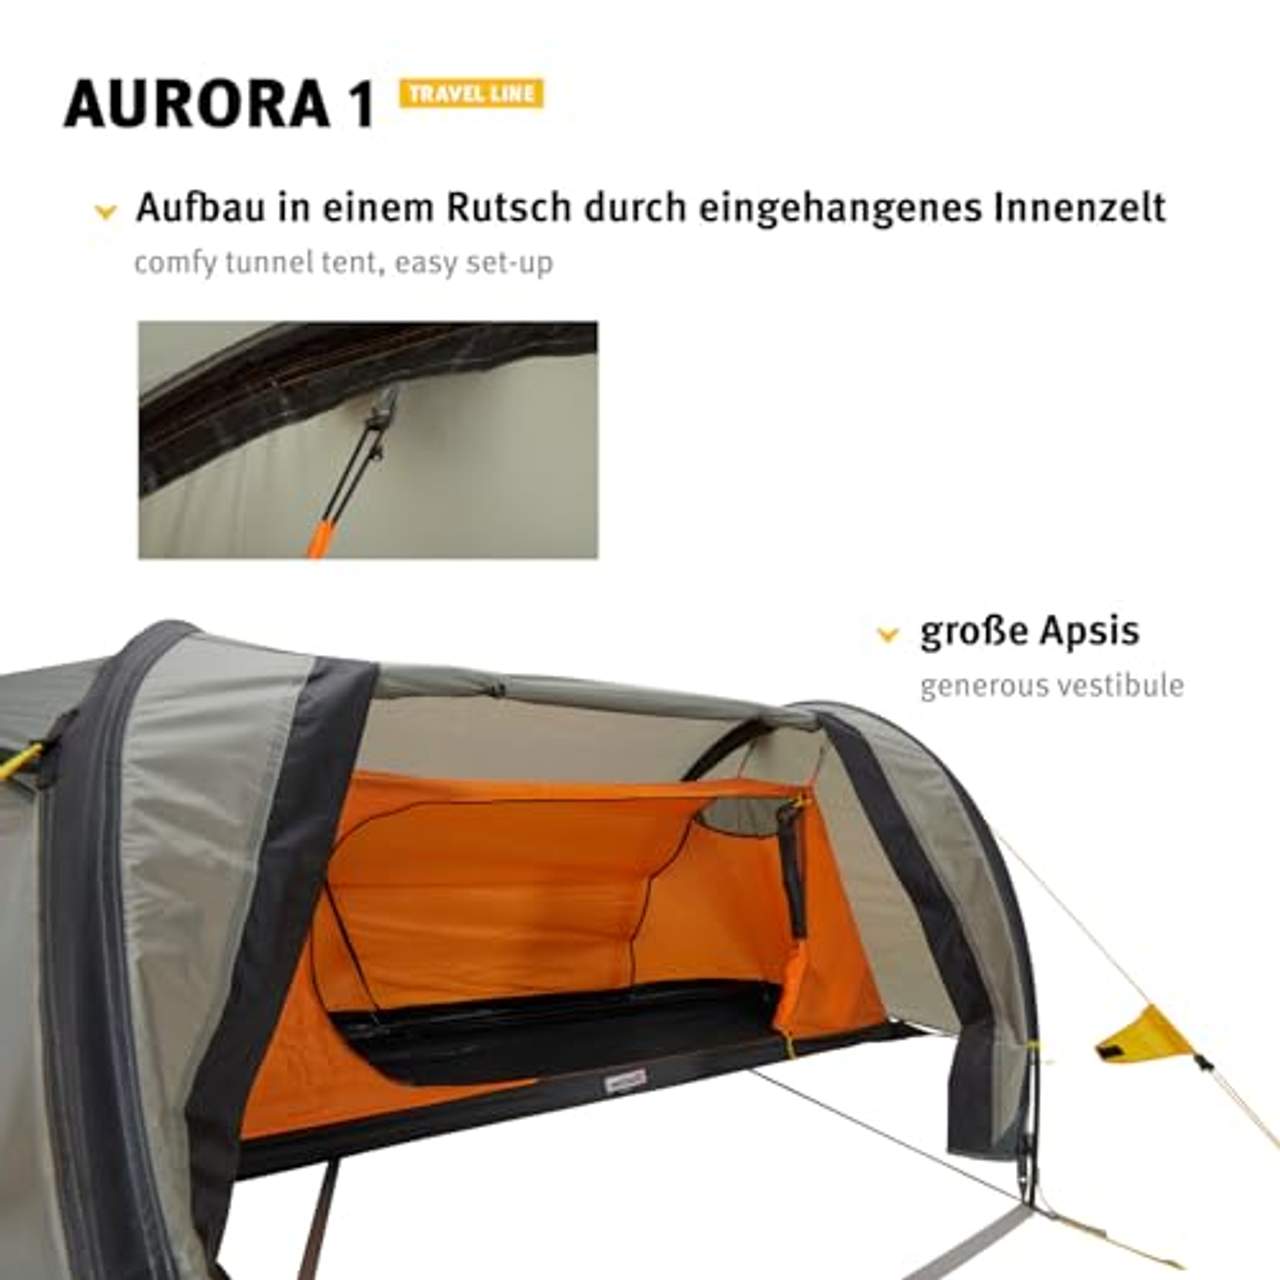 Wechsel Tents Aurora 1 Tunnelzelt